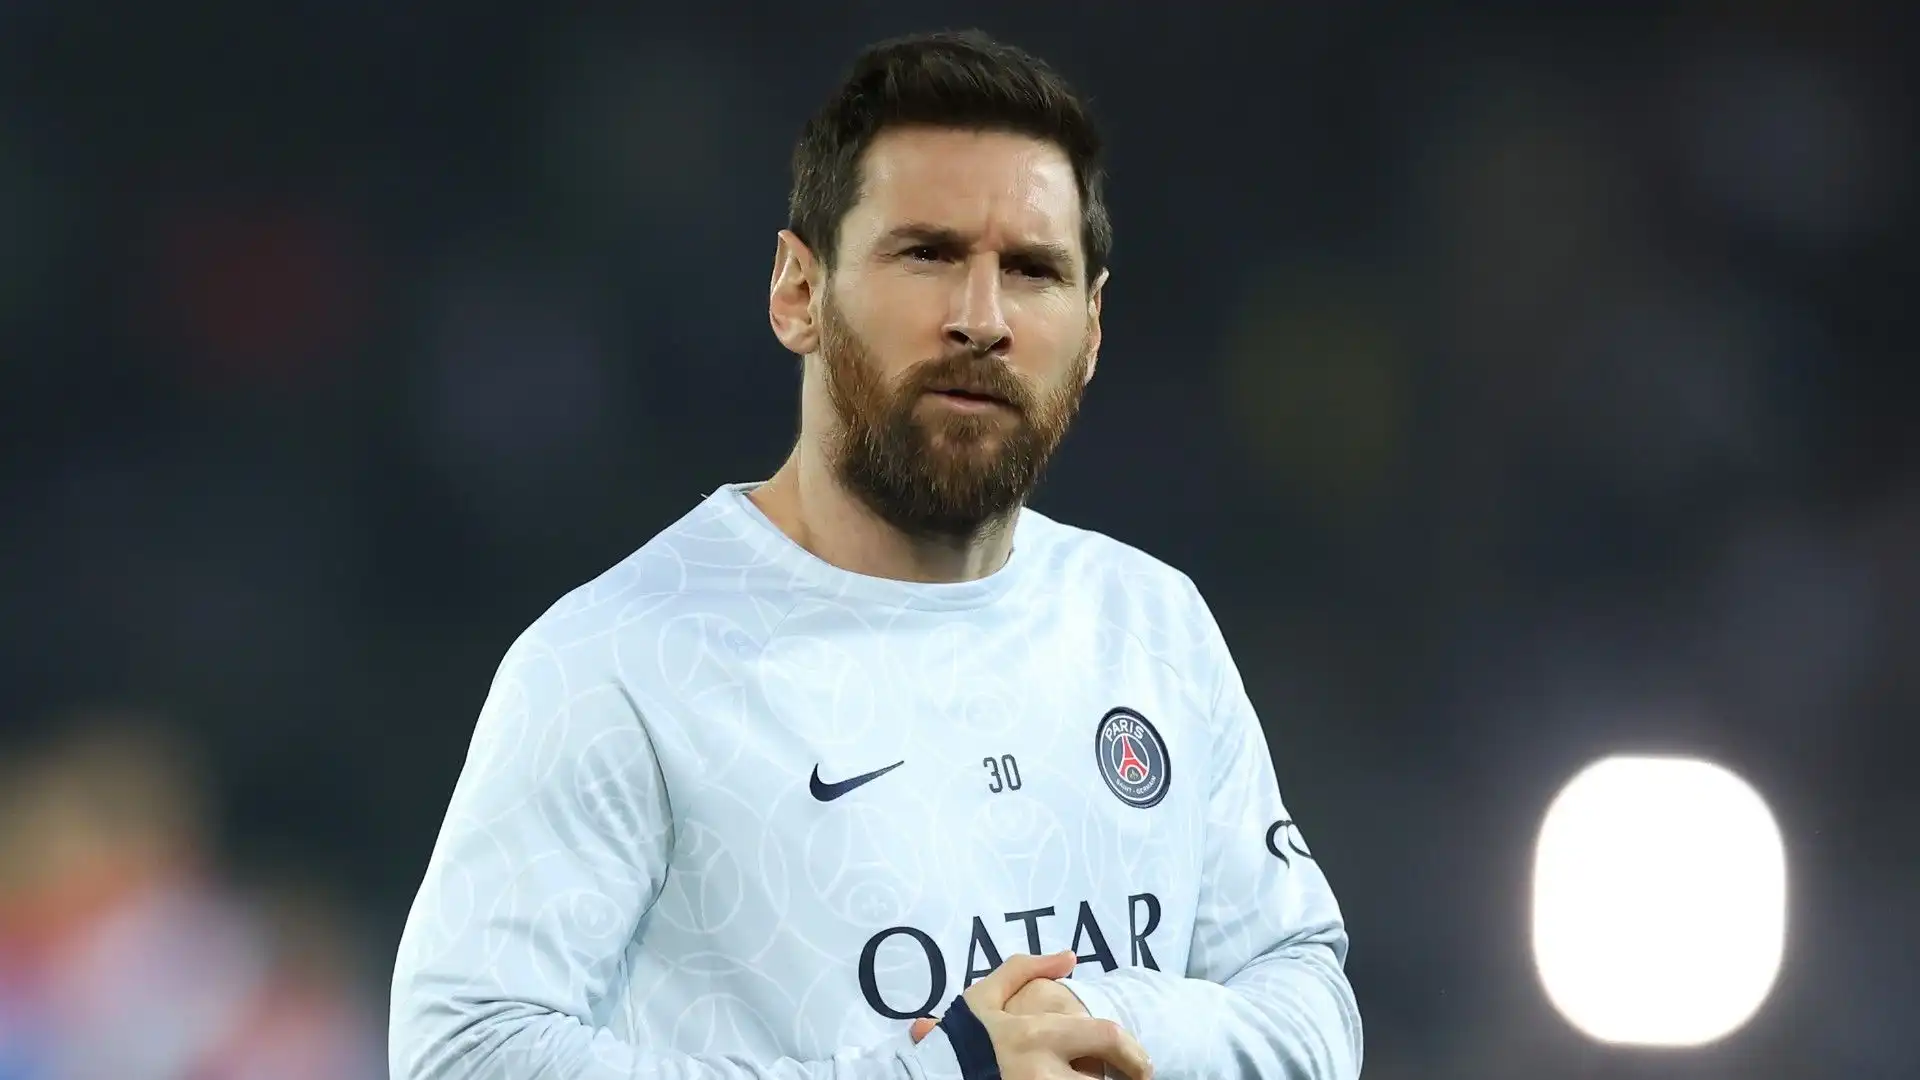 2- Lionel Messi - Guadagni totali: 130 milioni di dollari - calcio